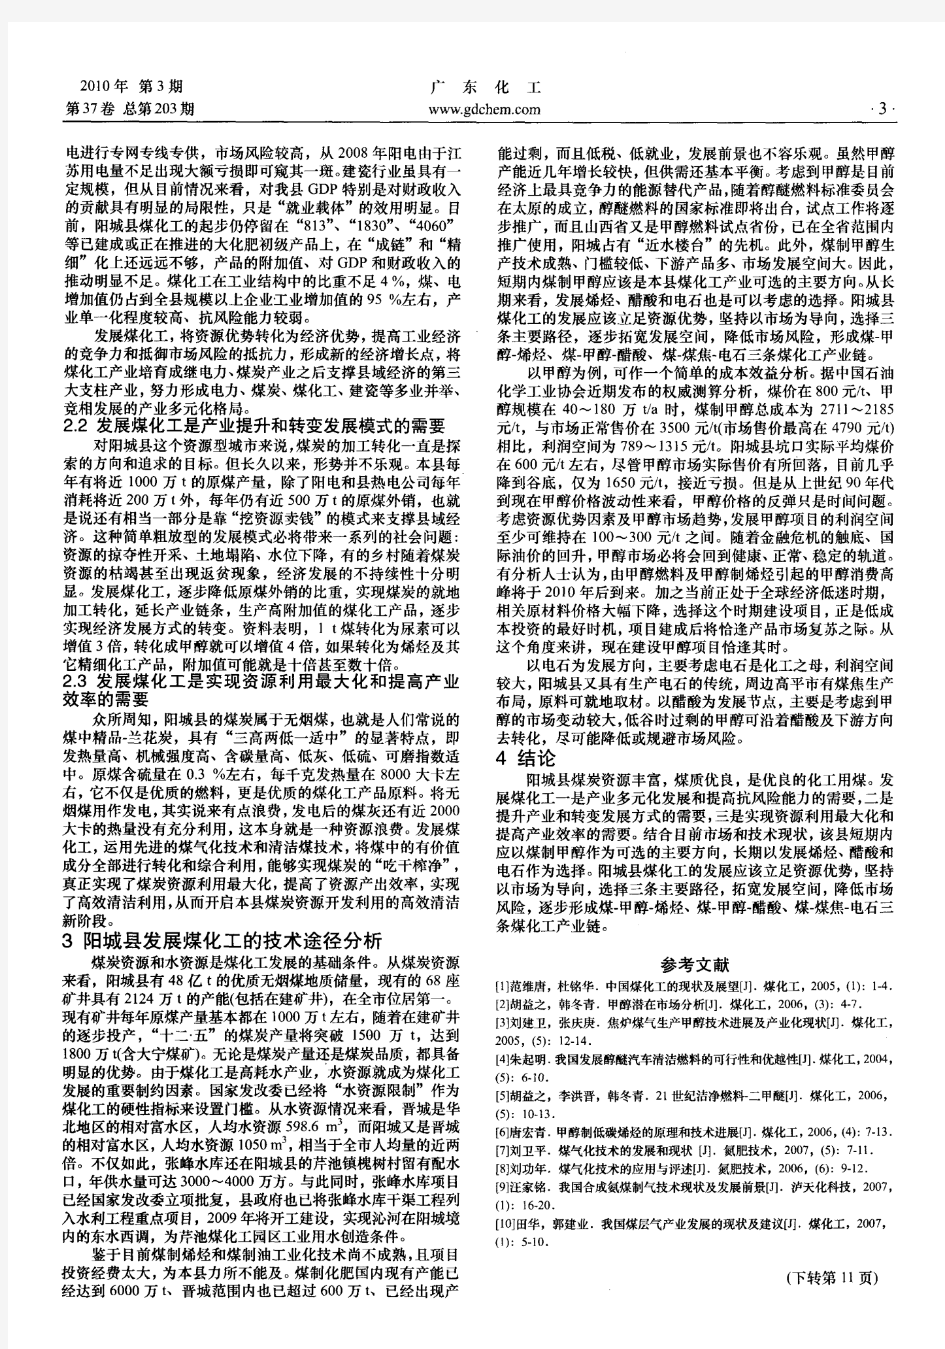 山西省阳城县煤化工产业发展方向的探讨